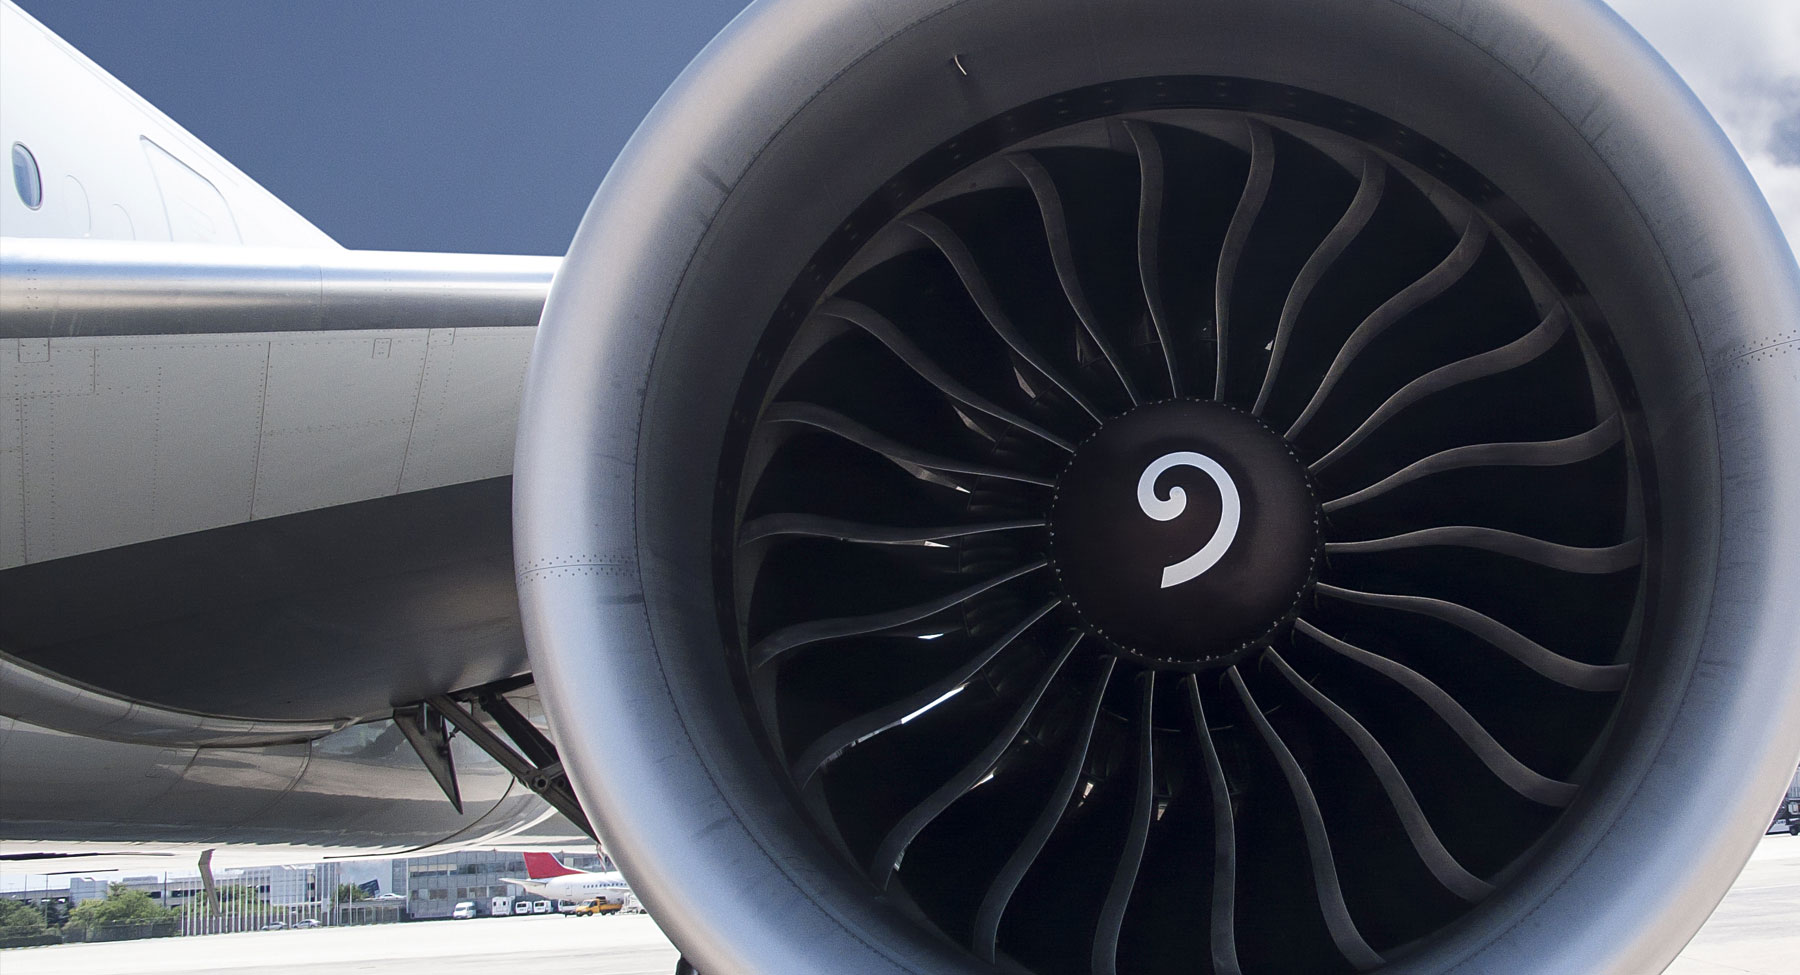 close up of jet engine turbine